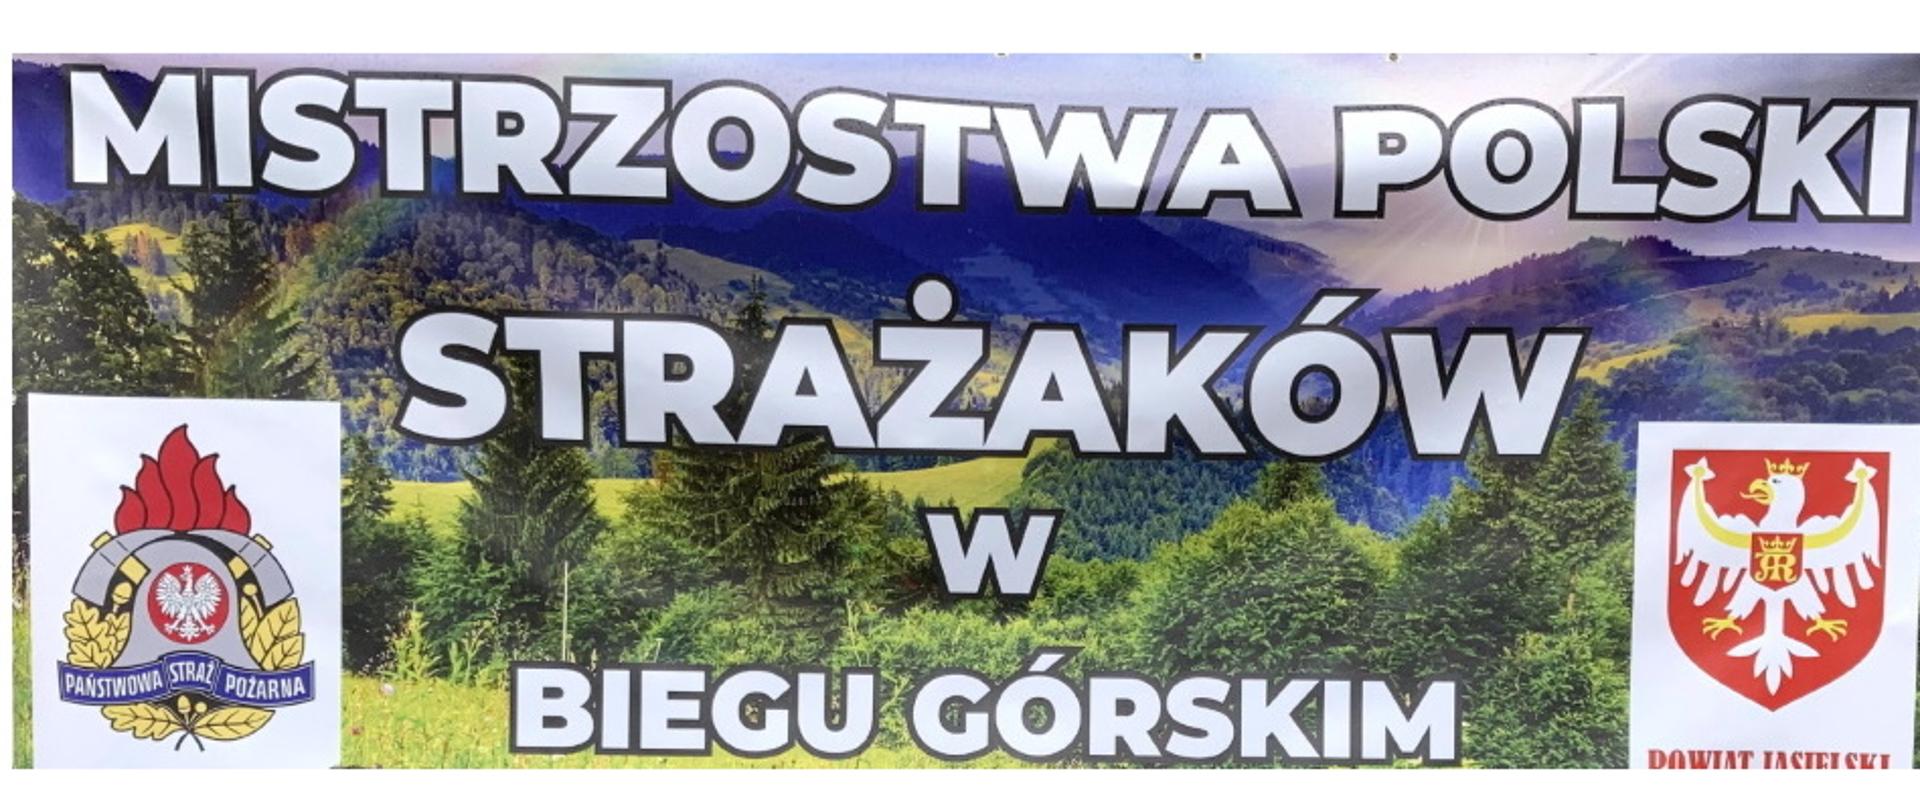 V Mistrzostwa Polski Strażaków PSP w biegu górskim - Ożenna 2022 r.